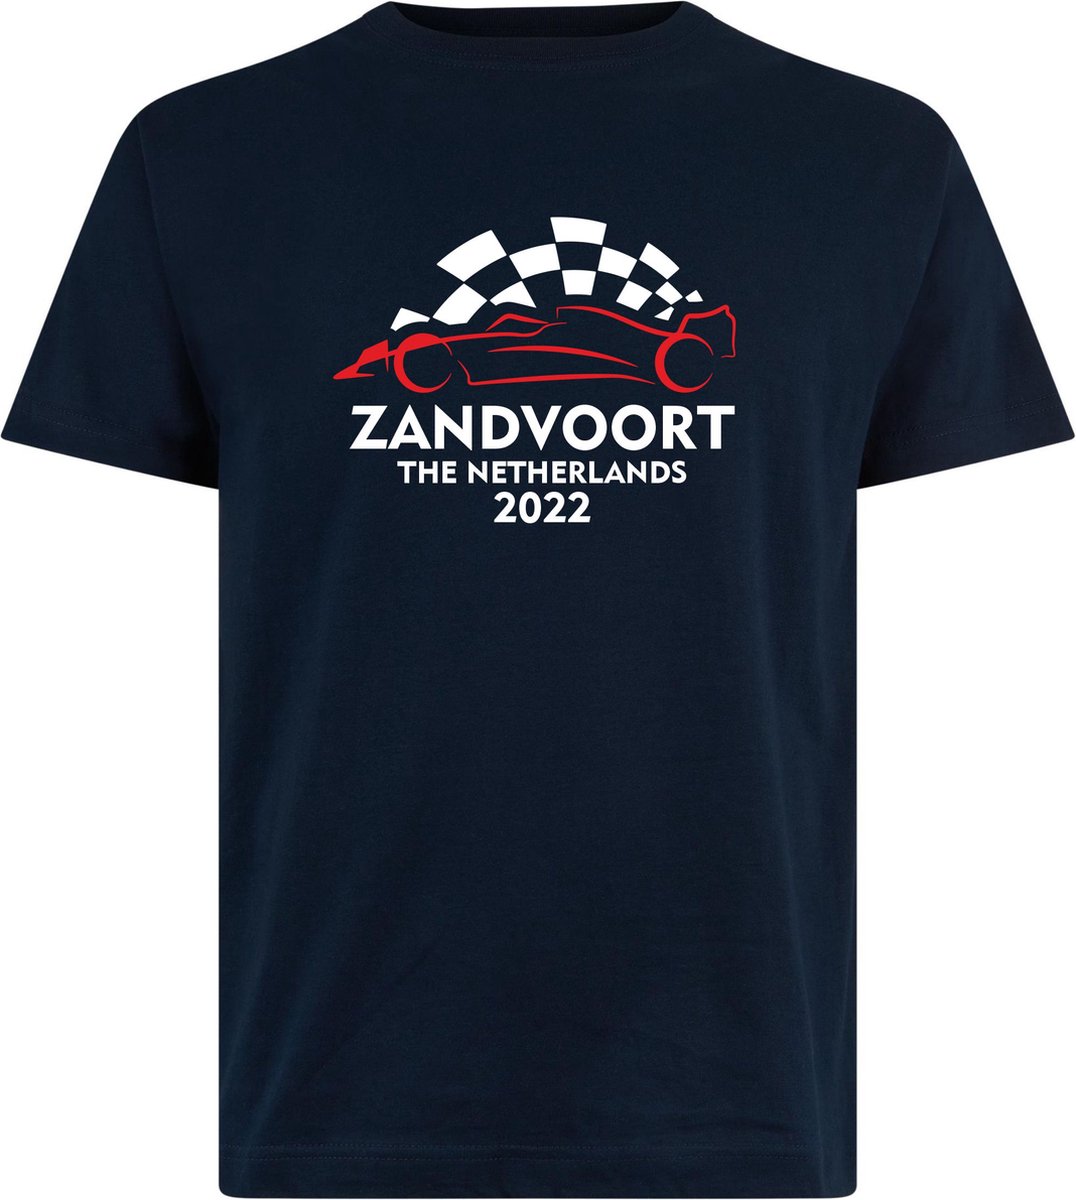 T-shirt Zandvoort 2022 met raceauto | Max Verstappen / Red Bull Racing / Formule 1 fan | Grand Prix Circuit Zandvoort | kleding shirt | Navy | maat L